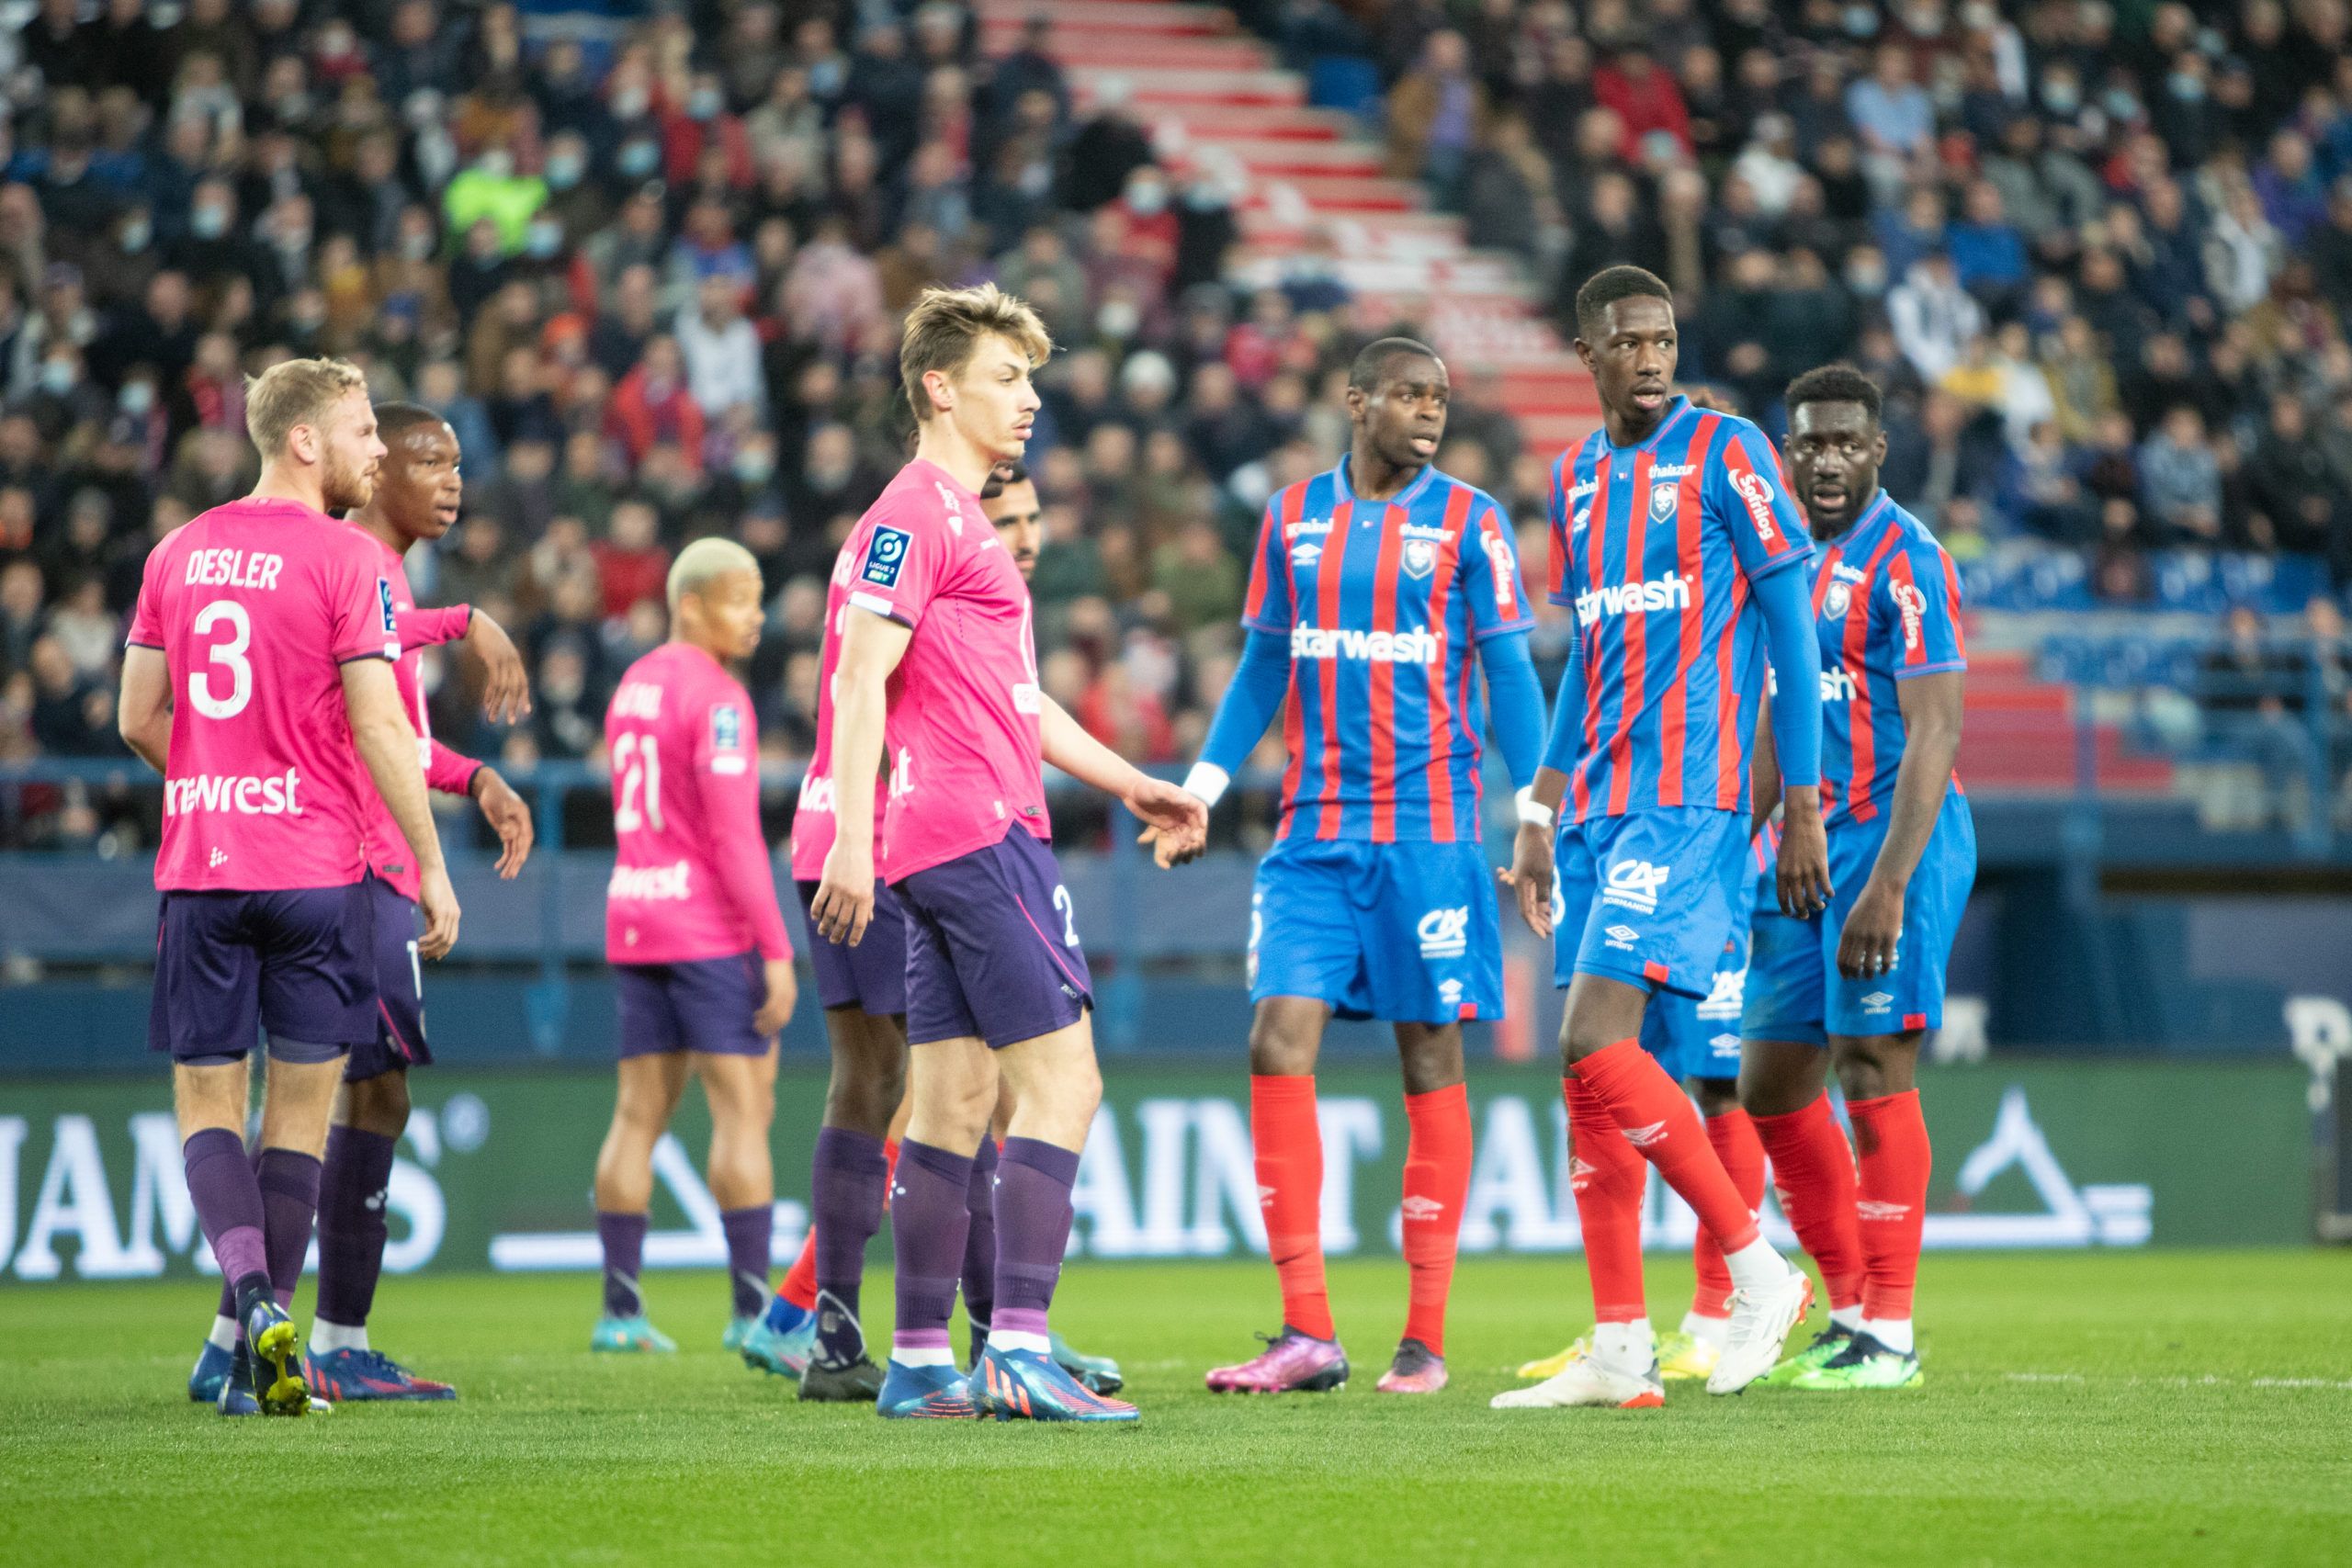 Les notes des joueurs caennais après la victoire contre Toulouse (4-1)